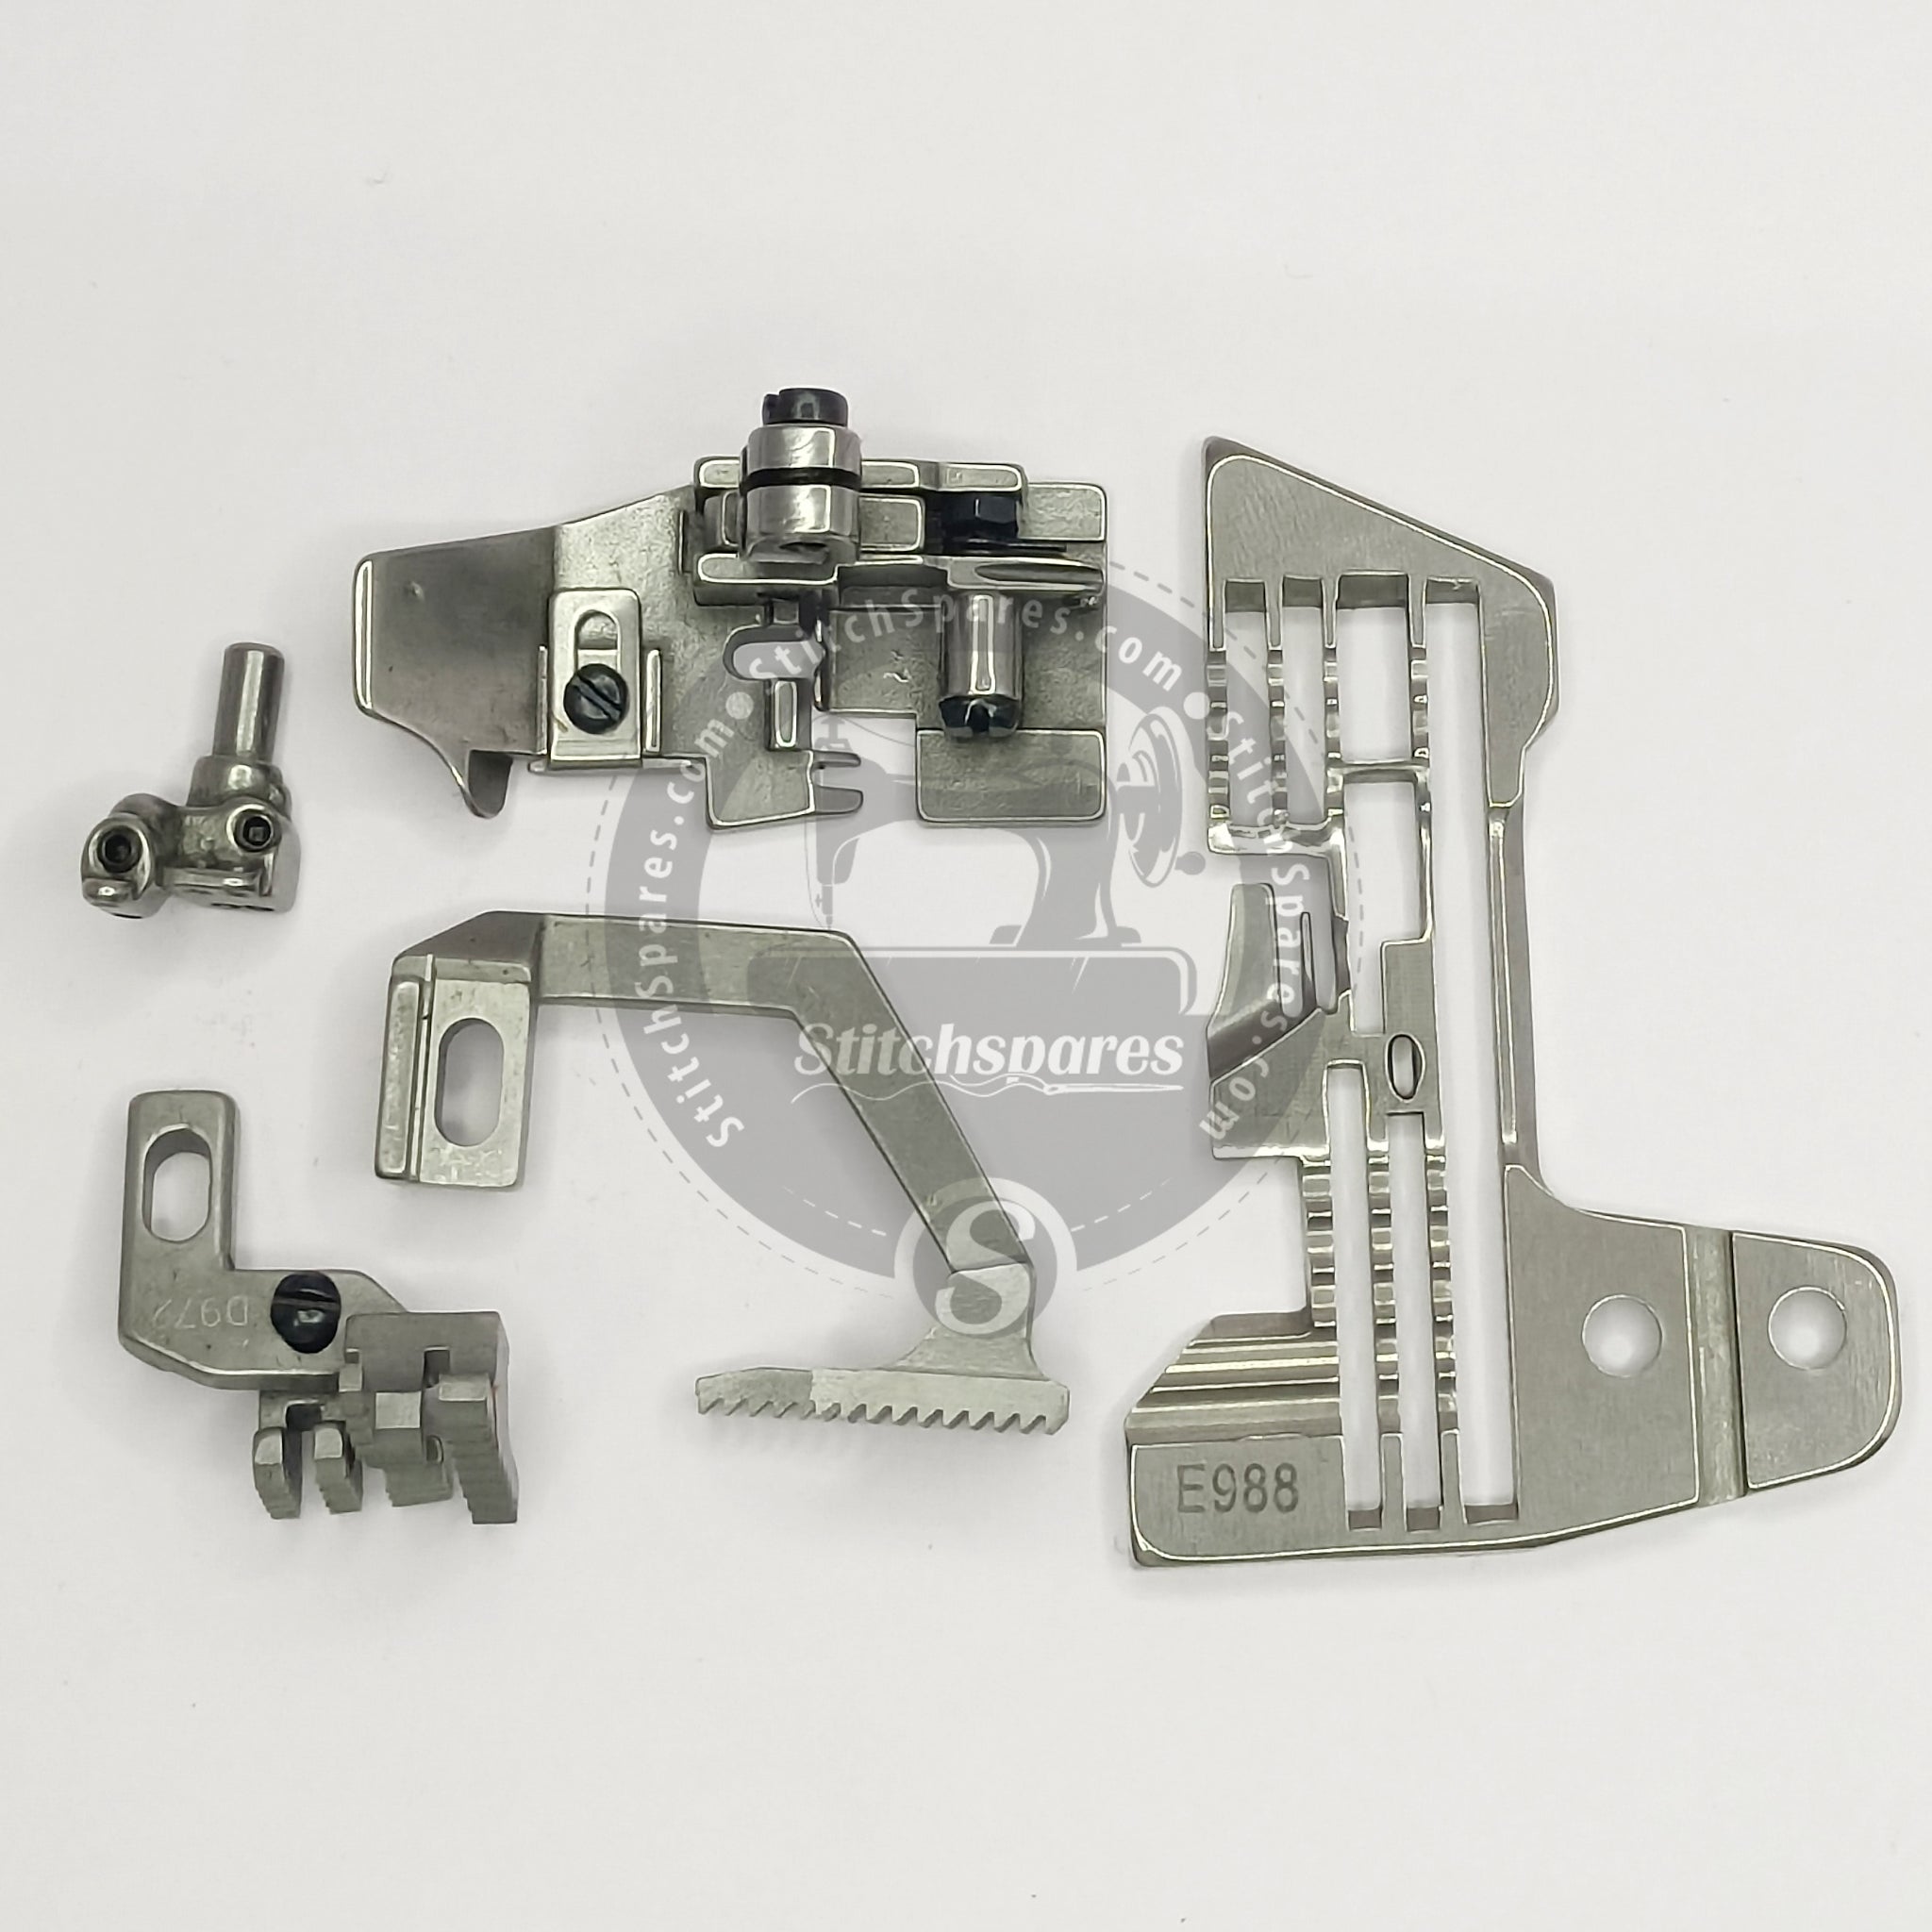 Juego de manómetros E988 Siruba 767-516m2-524 (5×2×4) Pieza de repuesto para máquina de coser